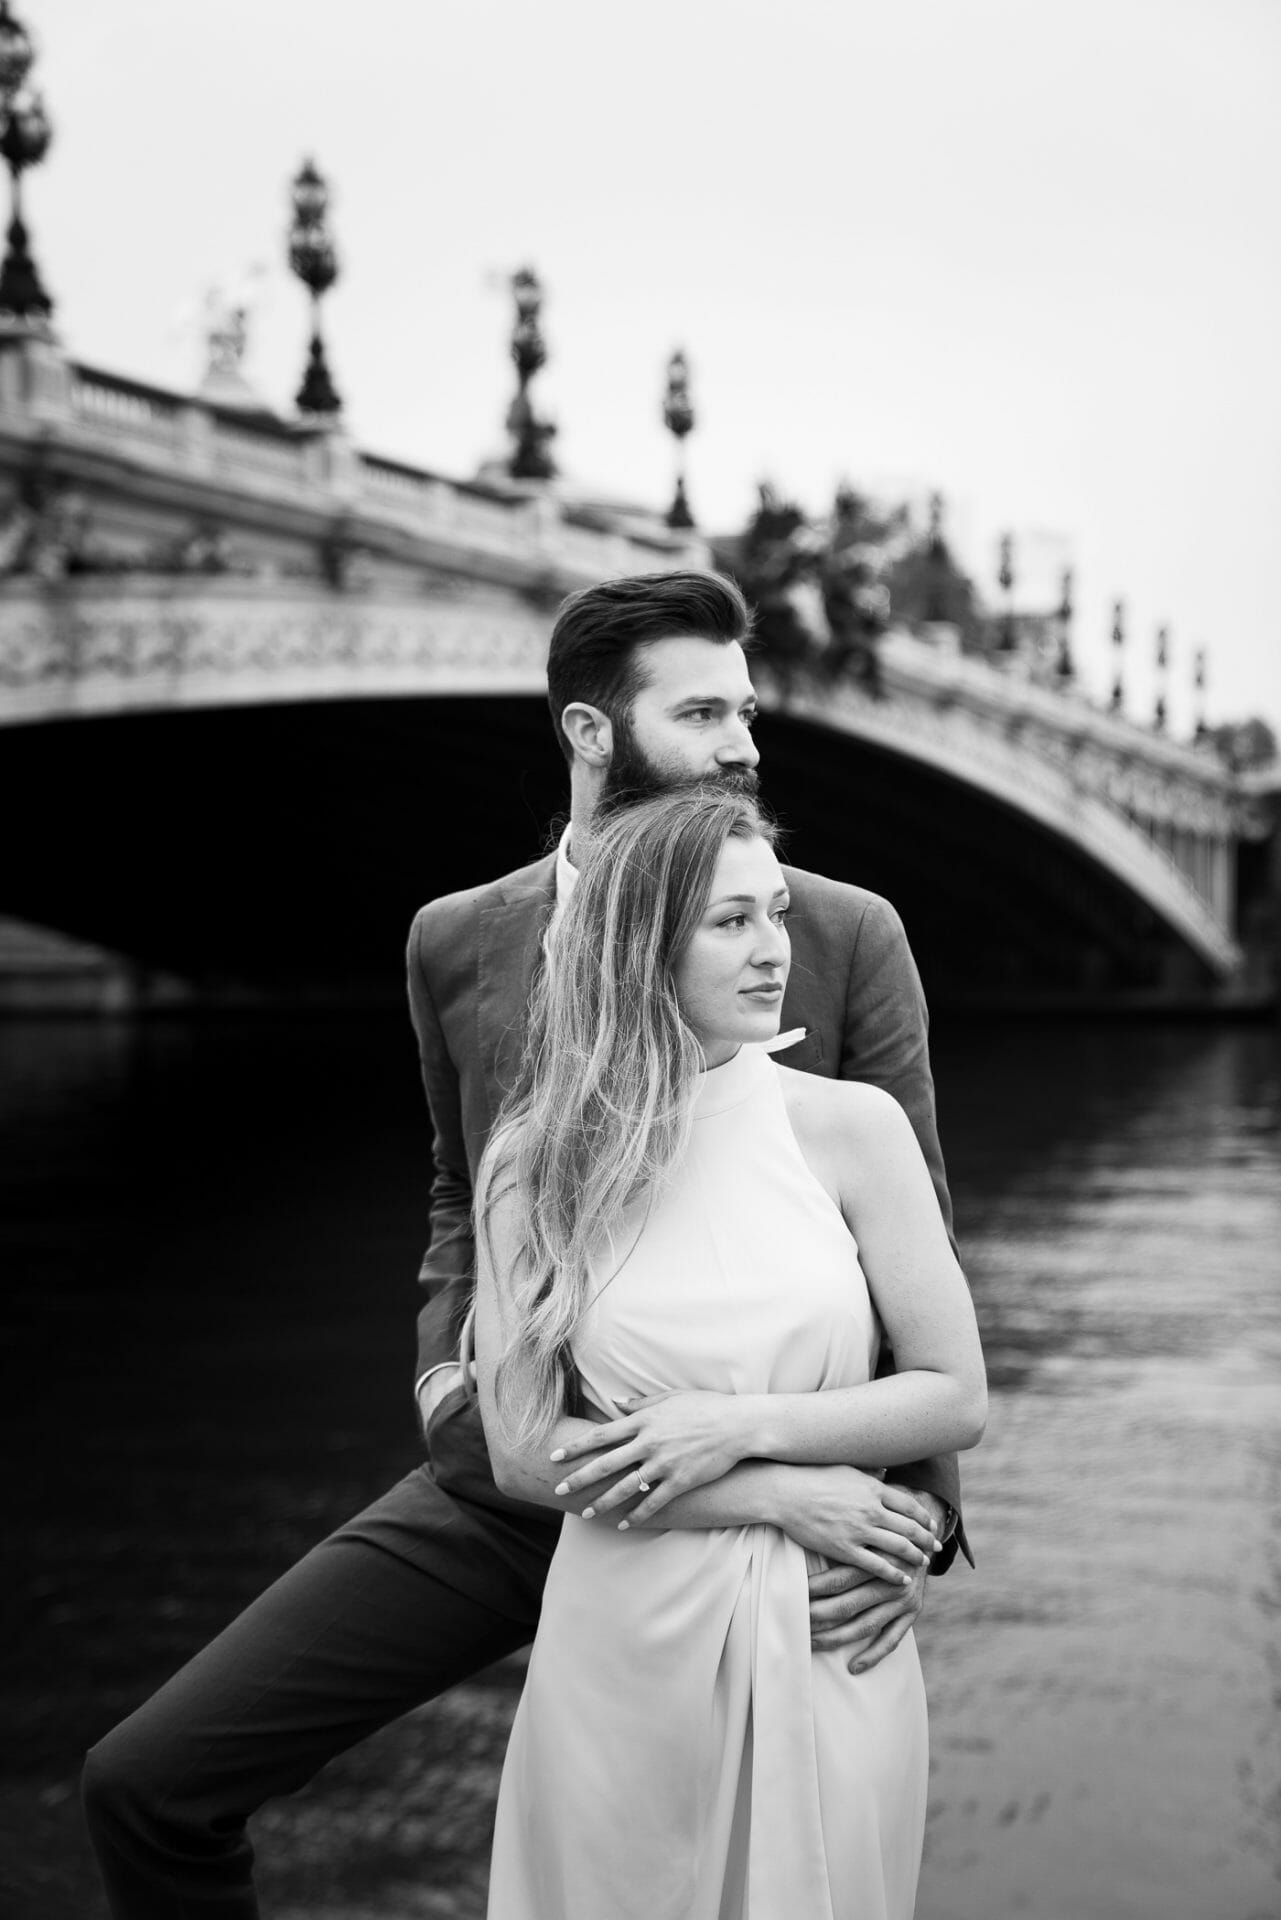 Editorial couple photos in Paris at Alexander III Bridge around sunrise